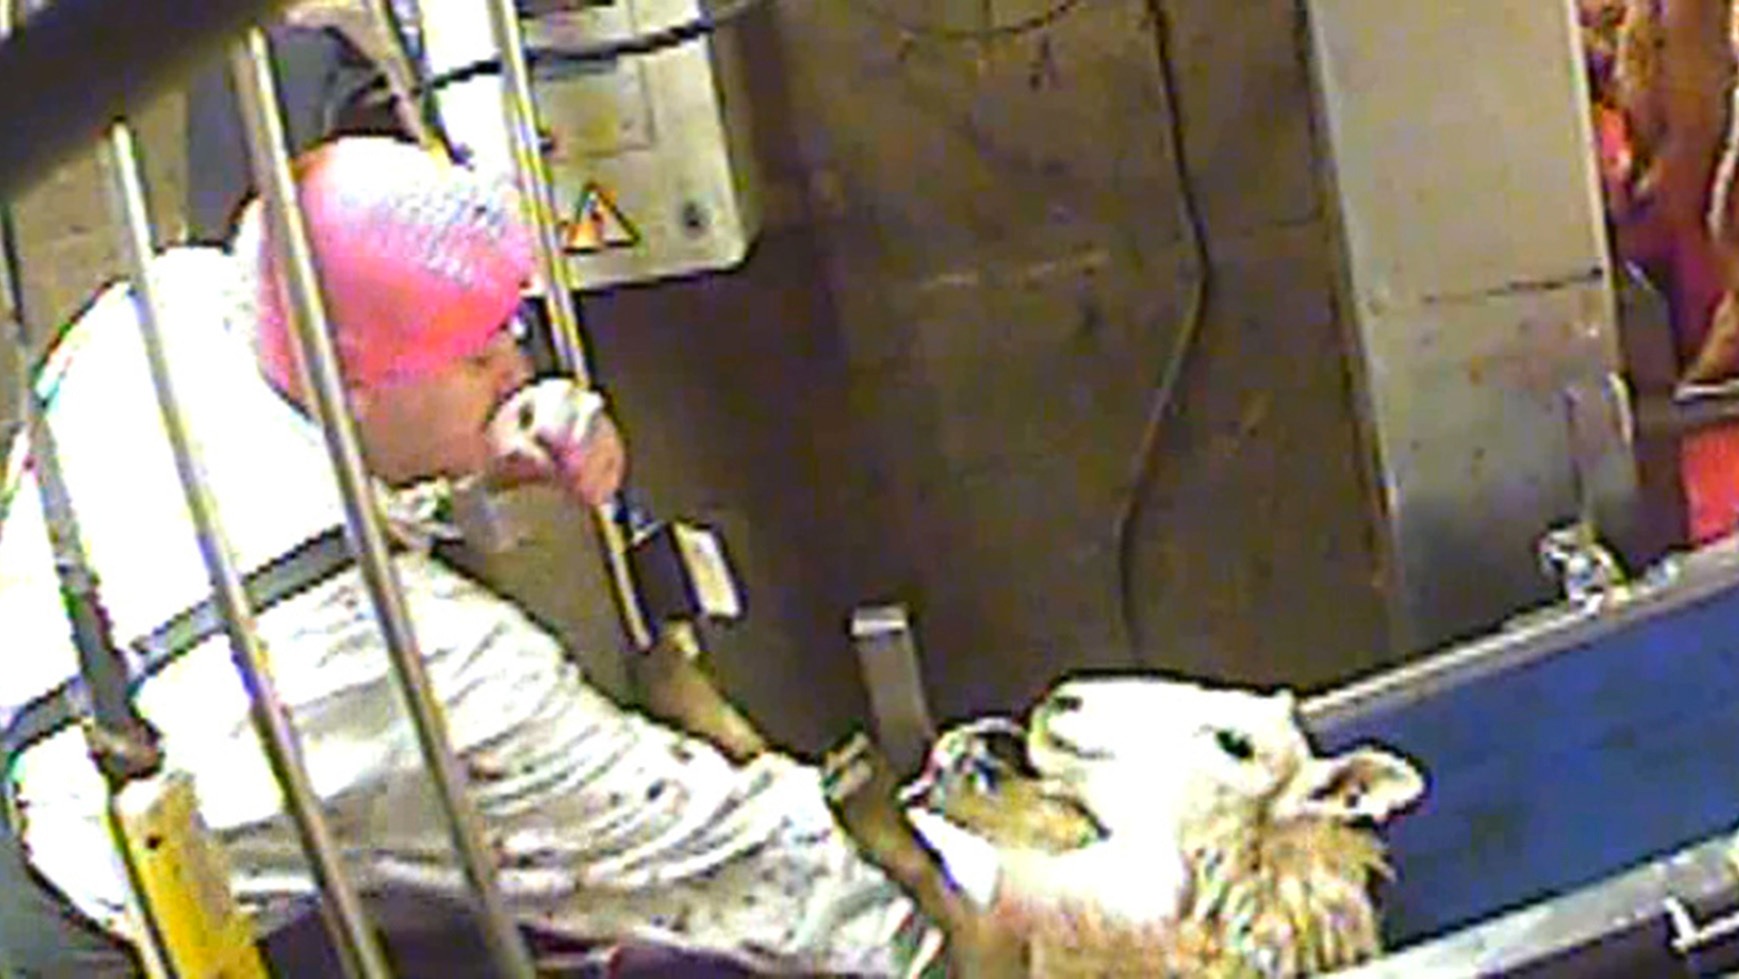 Horrific animal abuse' captured on halal slaughterhouse spycam | ITV News